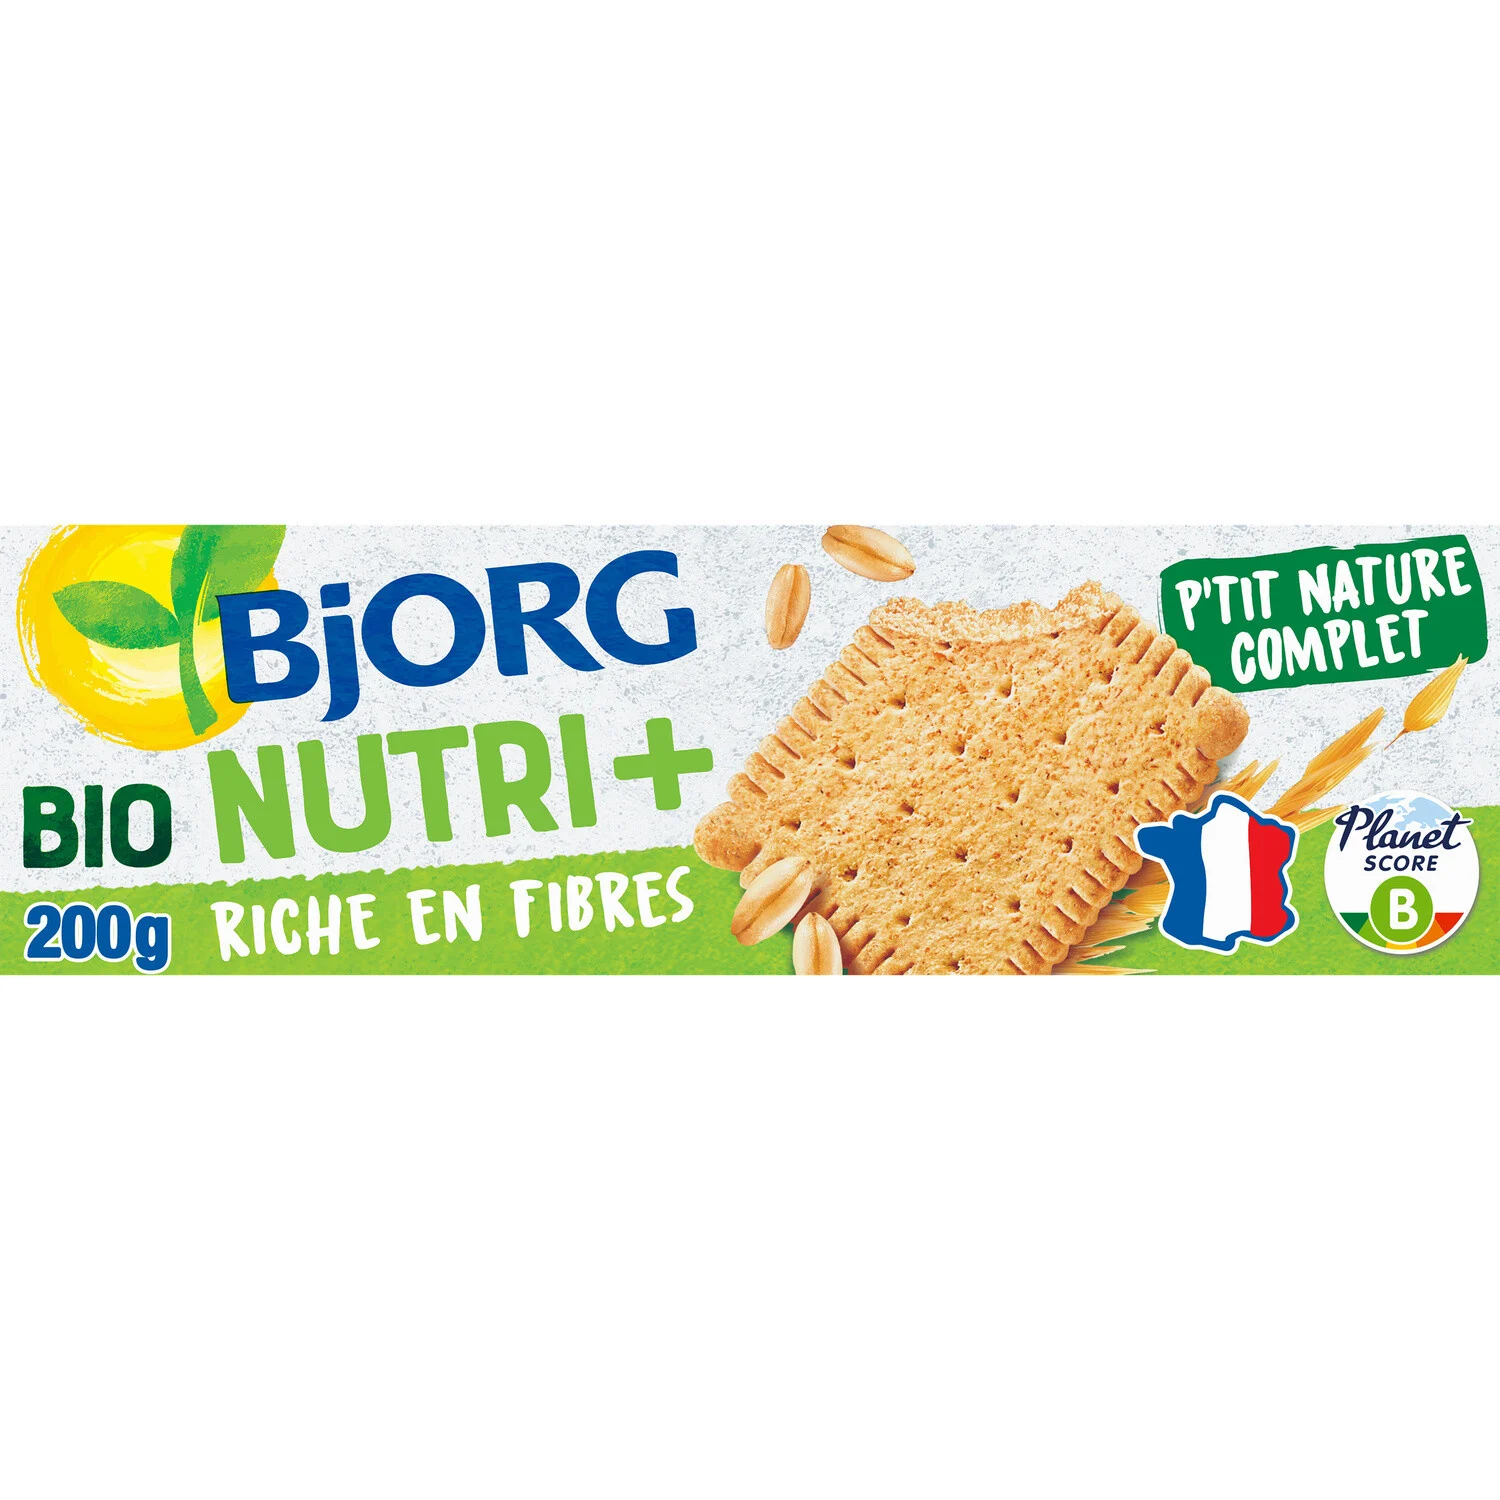 200 克 P Tit Natur Bjorg 饼干